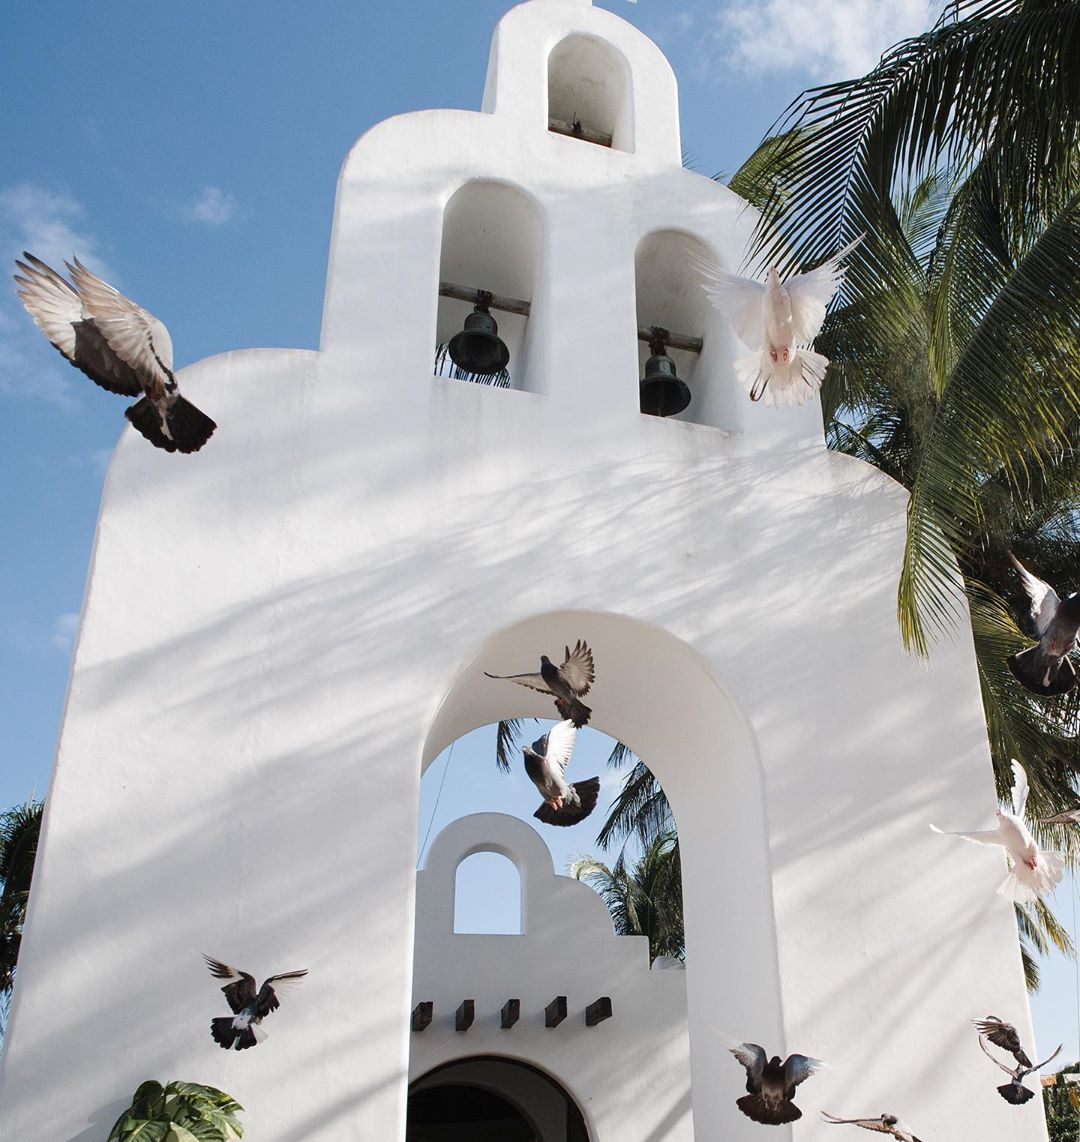 capilla playa del carmen, quinta avenida, top yucatan, playa del carmen, turismo, yucatan peninsula